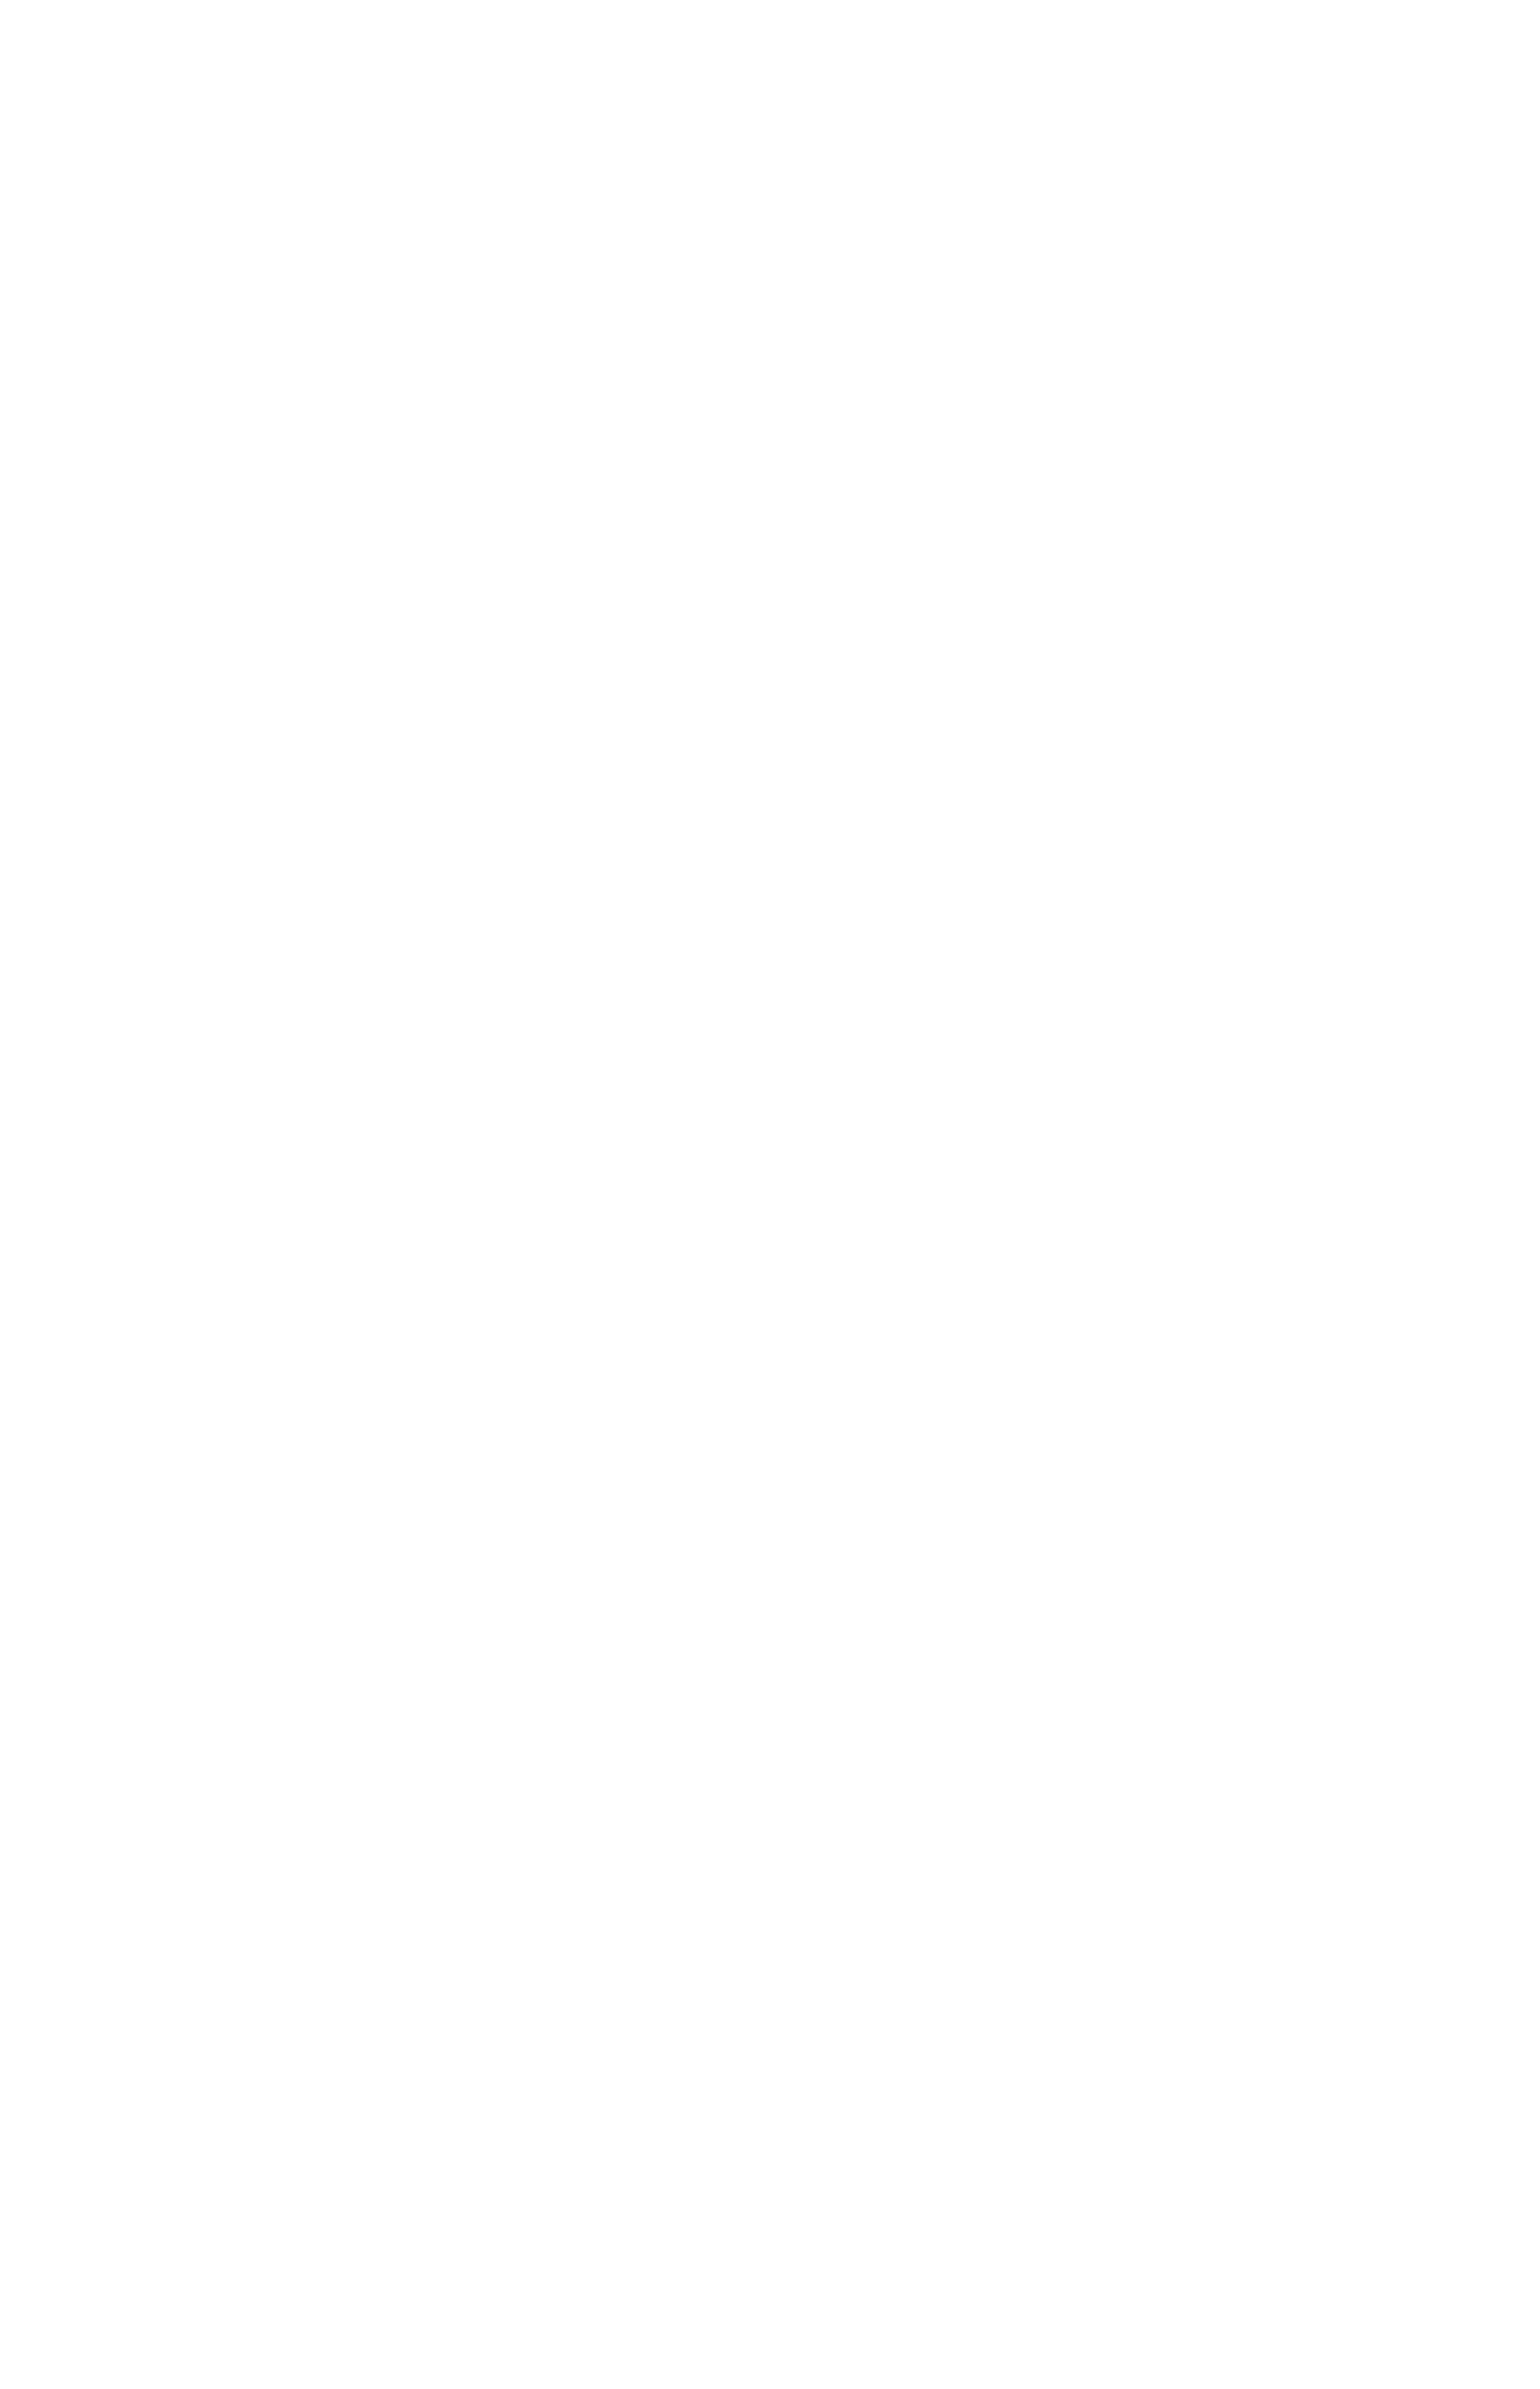 Фрагмент из прейскуранта 1910 года с изображениями вешнего фасада фотографического магазина В. Л. Метенкова. Из собрания Музея Истории Екатеринбурга